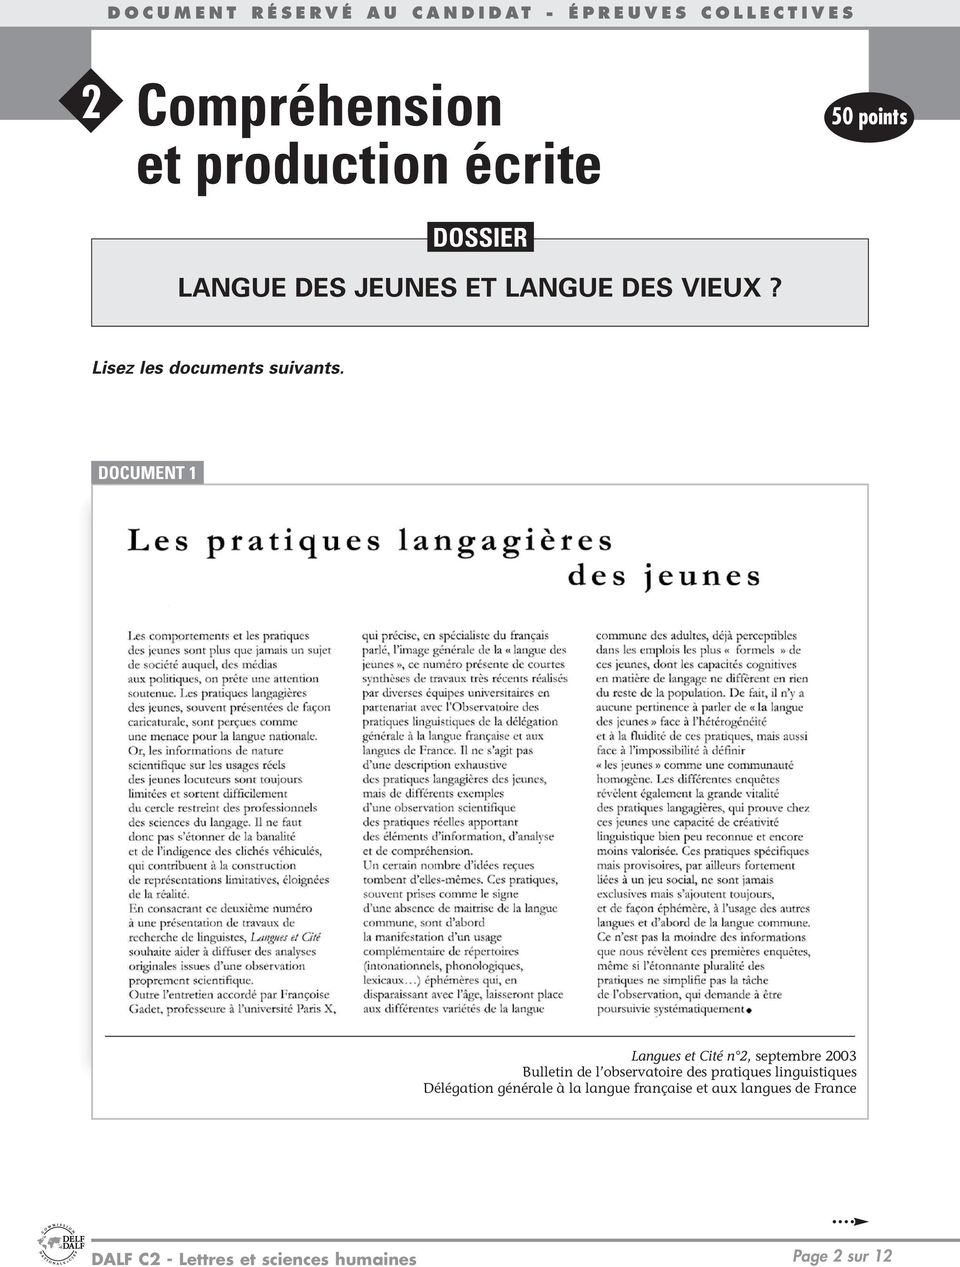 DOCUMENT 1 Langues et Cité n 2, septembre 2003 Bulletin de l observatoire